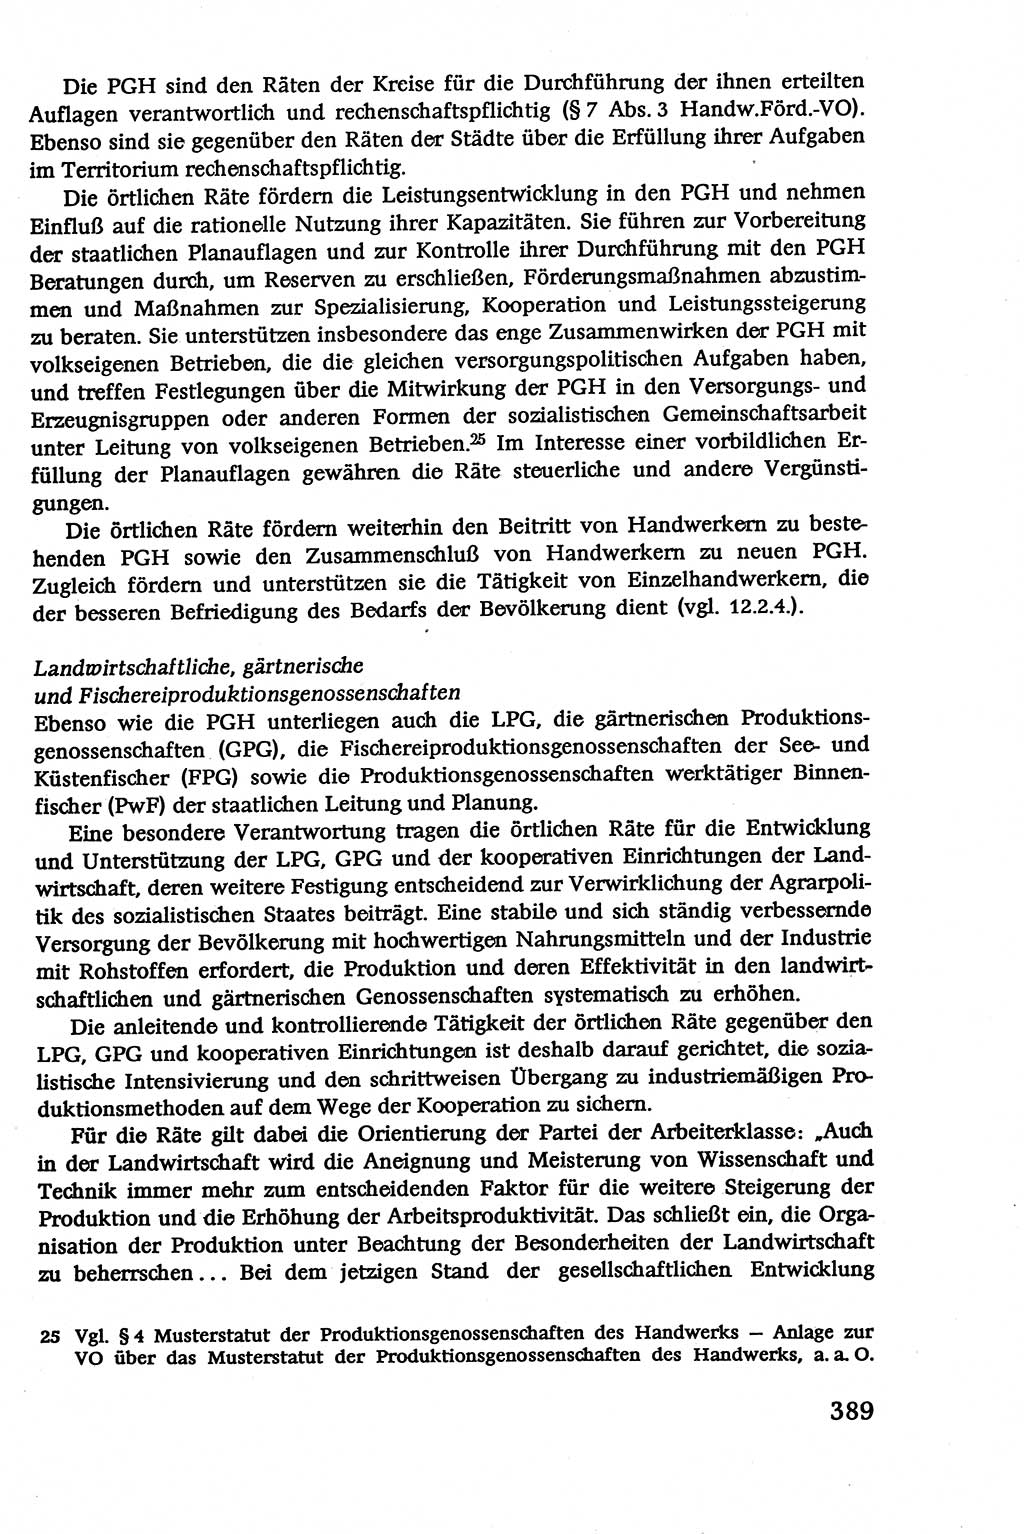 Verwaltungsrecht [Deutsche Demokratische Republik (DDR)], Lehrbuch 1979, Seite 389 (Verw.-R. DDR Lb. 1979, S. 389)